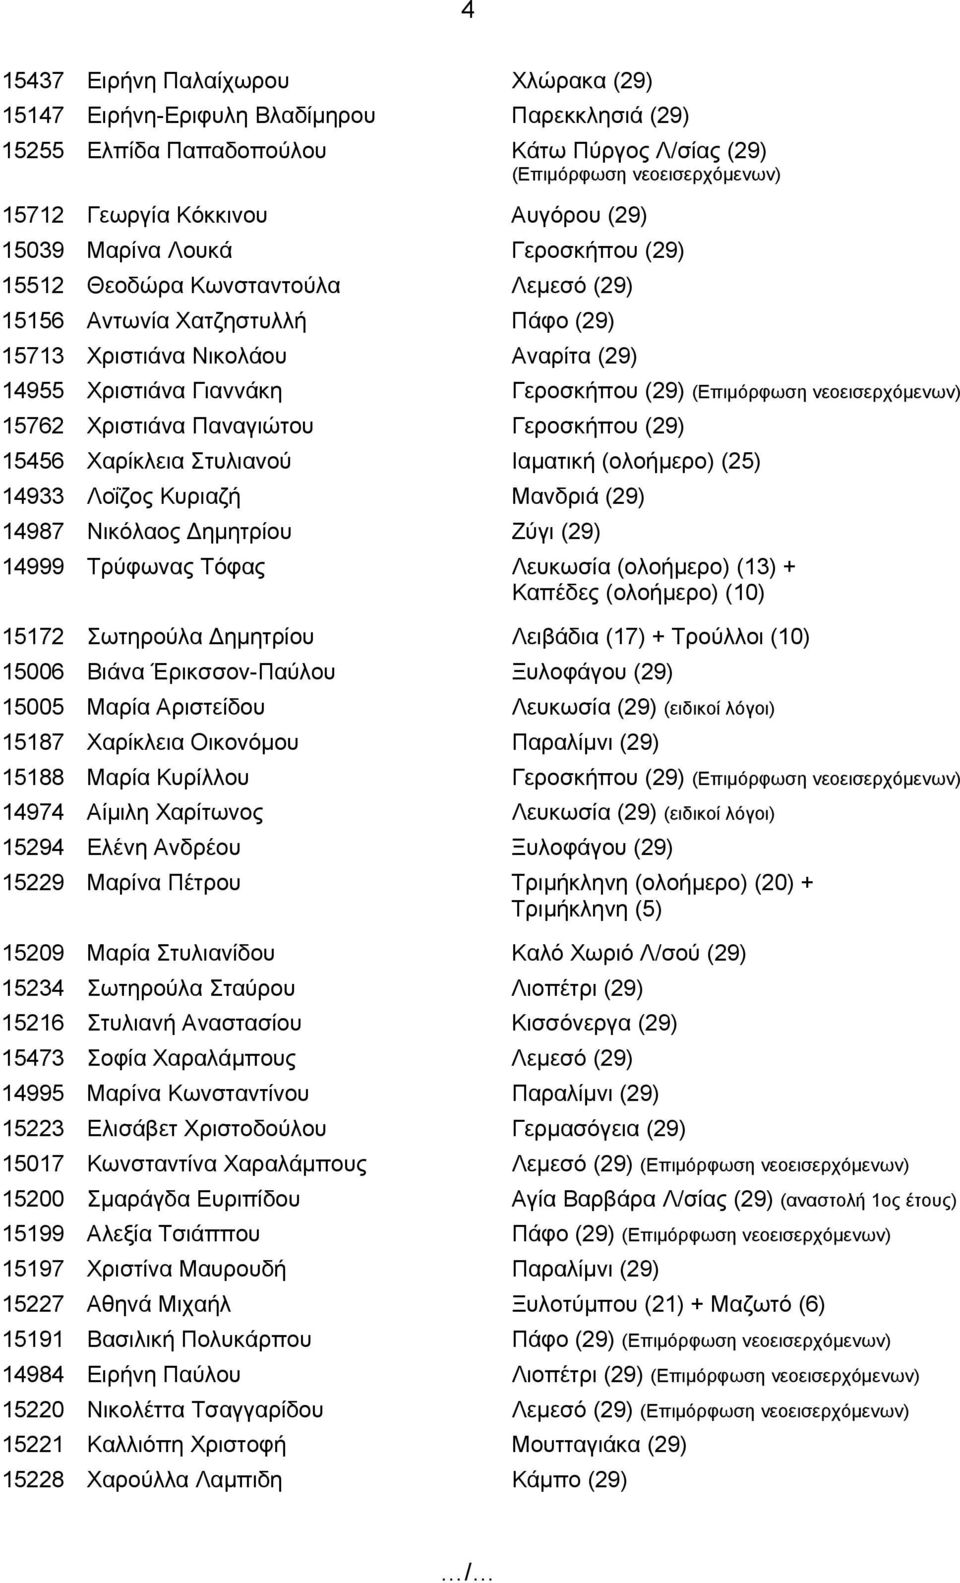 Γεροσκήπου (29) 15456 Χαρίκλεια Στυλιανού Ιαματική (ολοήμερο) (25) 14933 Λοΐζος Κυριαζή Μανδριά (29) 14987 Νικόλαος Δημητρίου Ζύγι (29) 14999 Τρύφωνας Τόφας Λευκωσία (ολοήμερο) (13) + Καπέδες